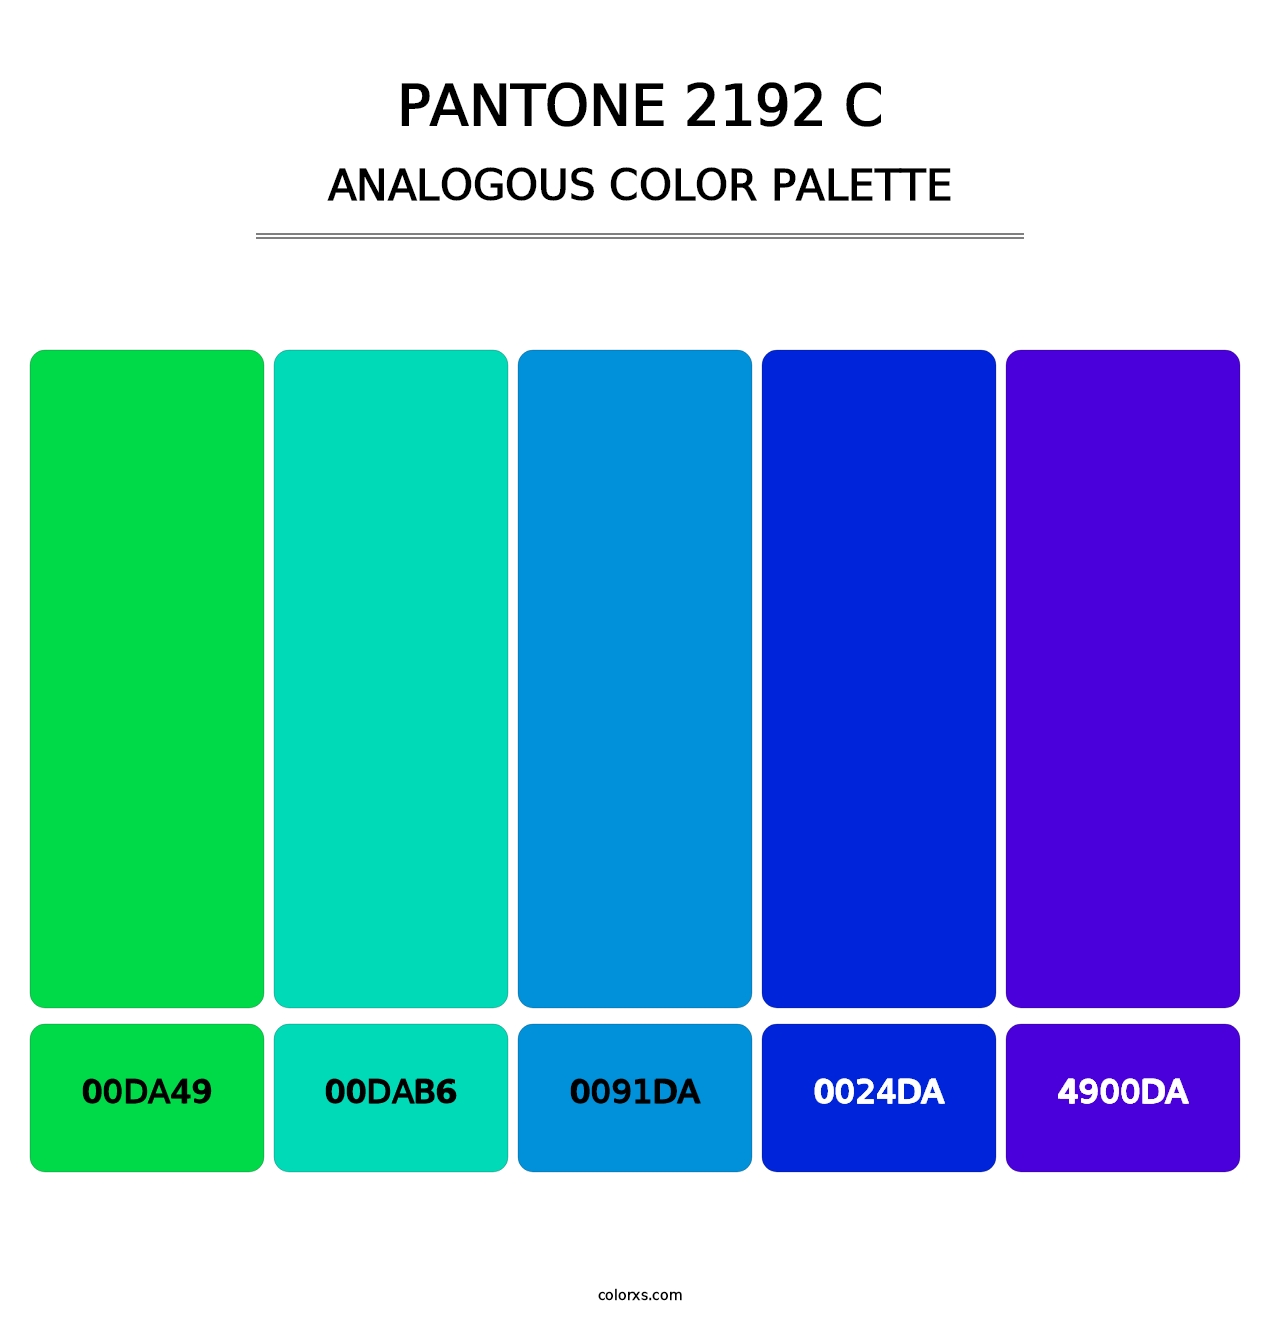 PANTONE 2192 C - Analogous Color Palette